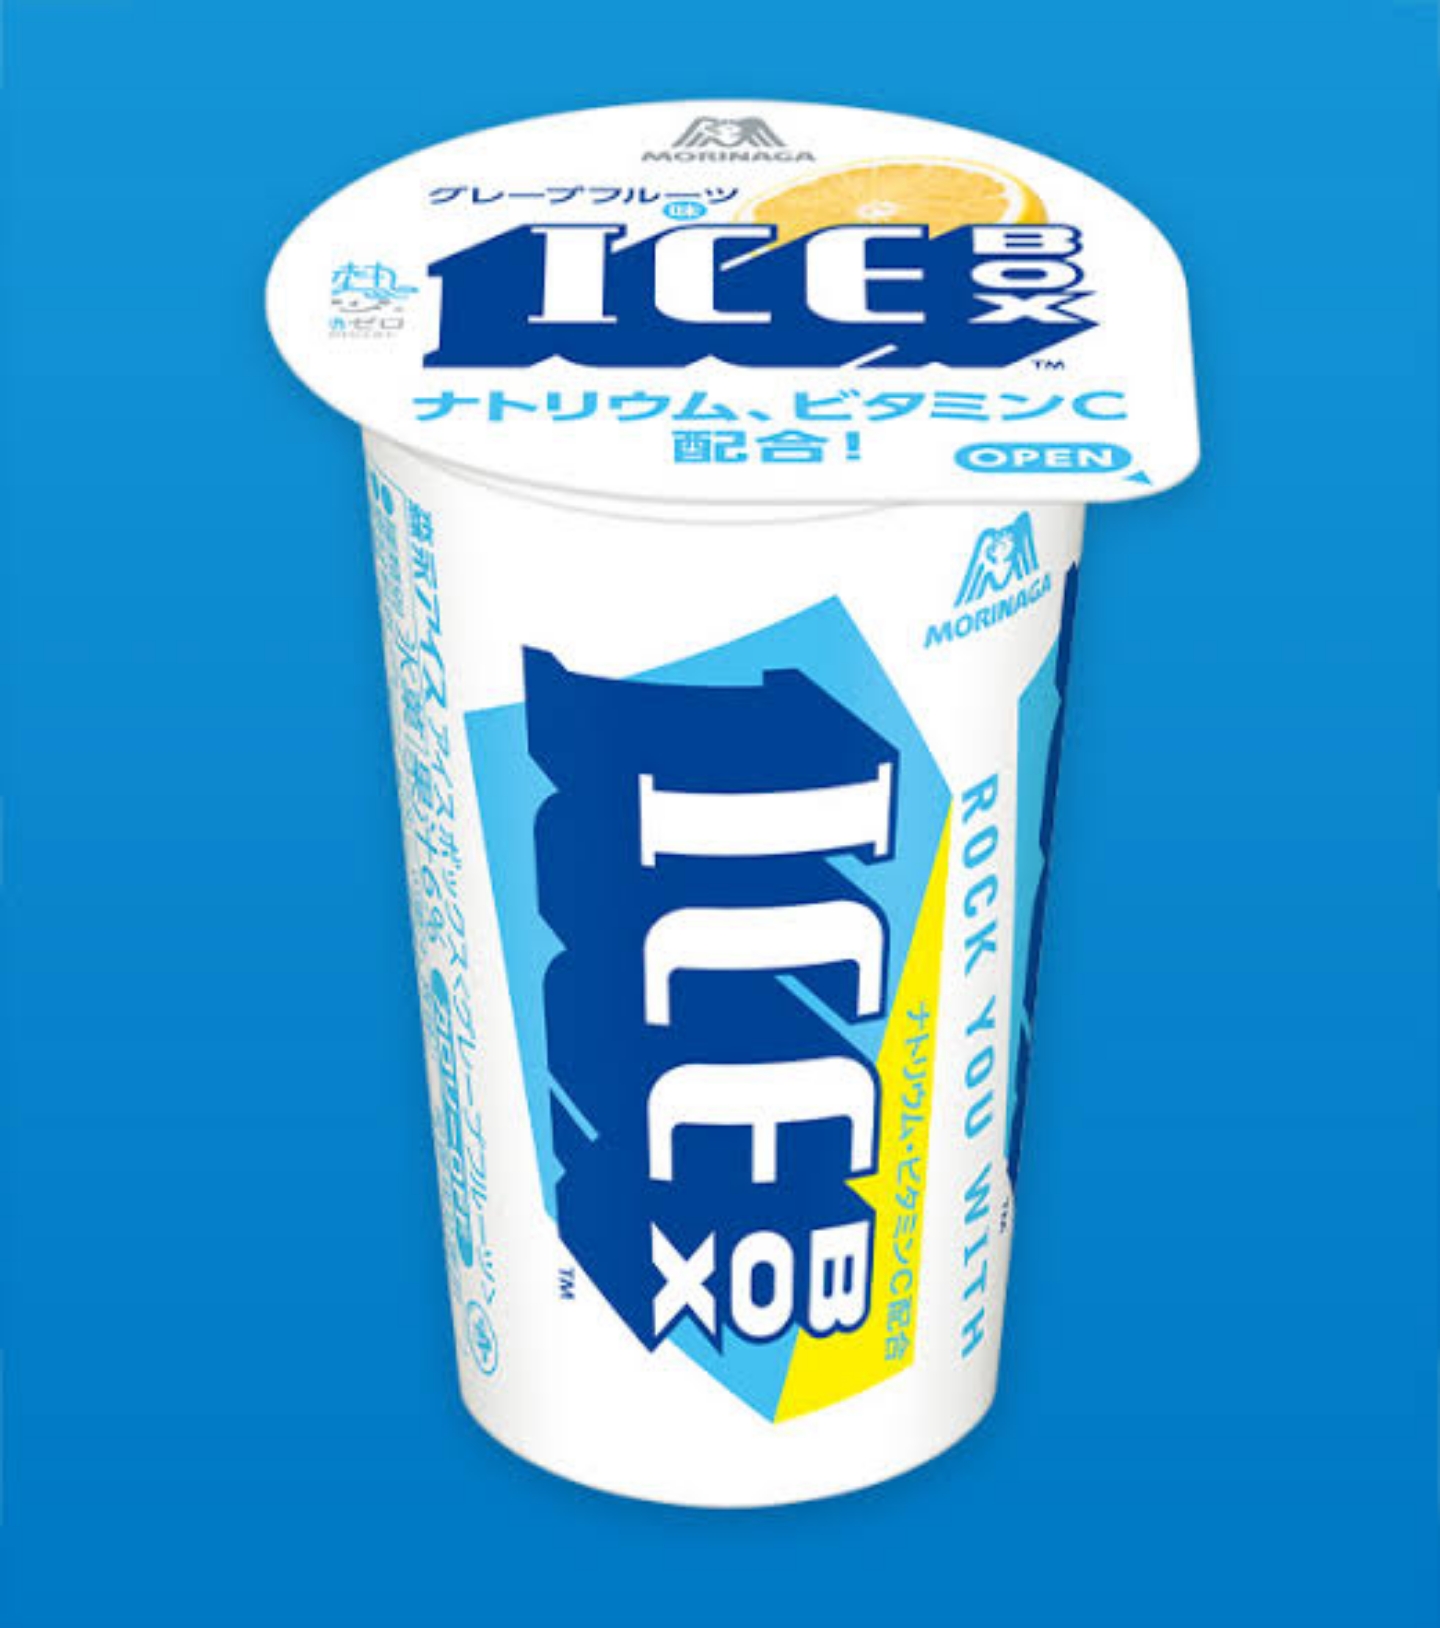 【飲料】アイスボックスとかいう最強の氷ｗｗｗｗｗｗｗｗｗｗｗｗ